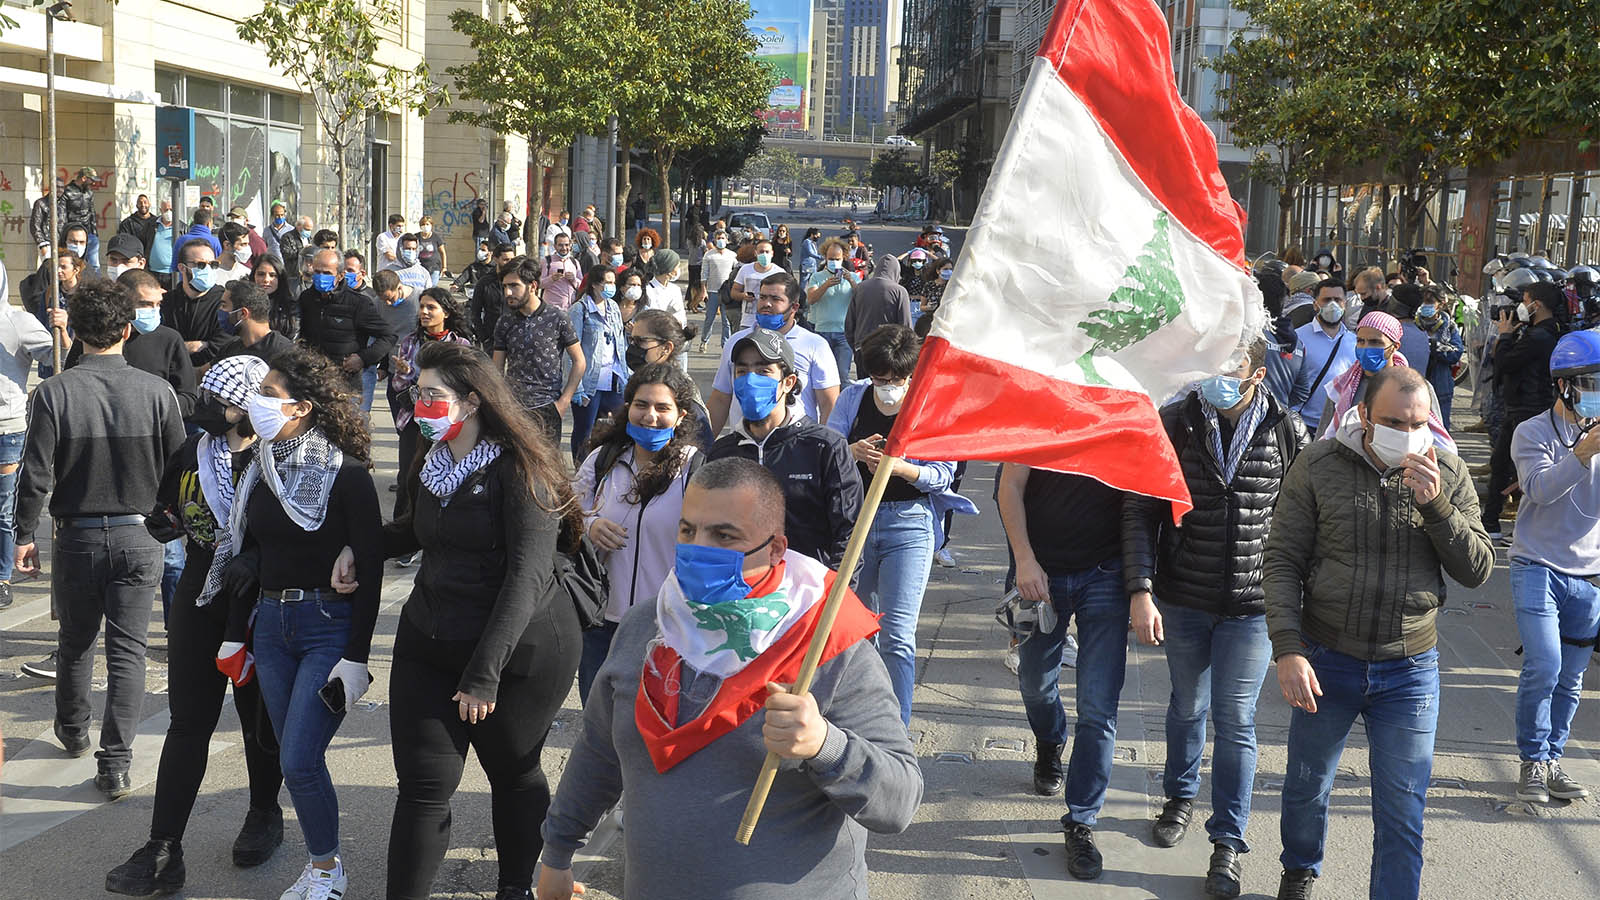 הפגנה במחאה על עליית מחירי המזון בלבנון. (צילום: Houssam Shbaro/Anadolu Agency via Getty Images)